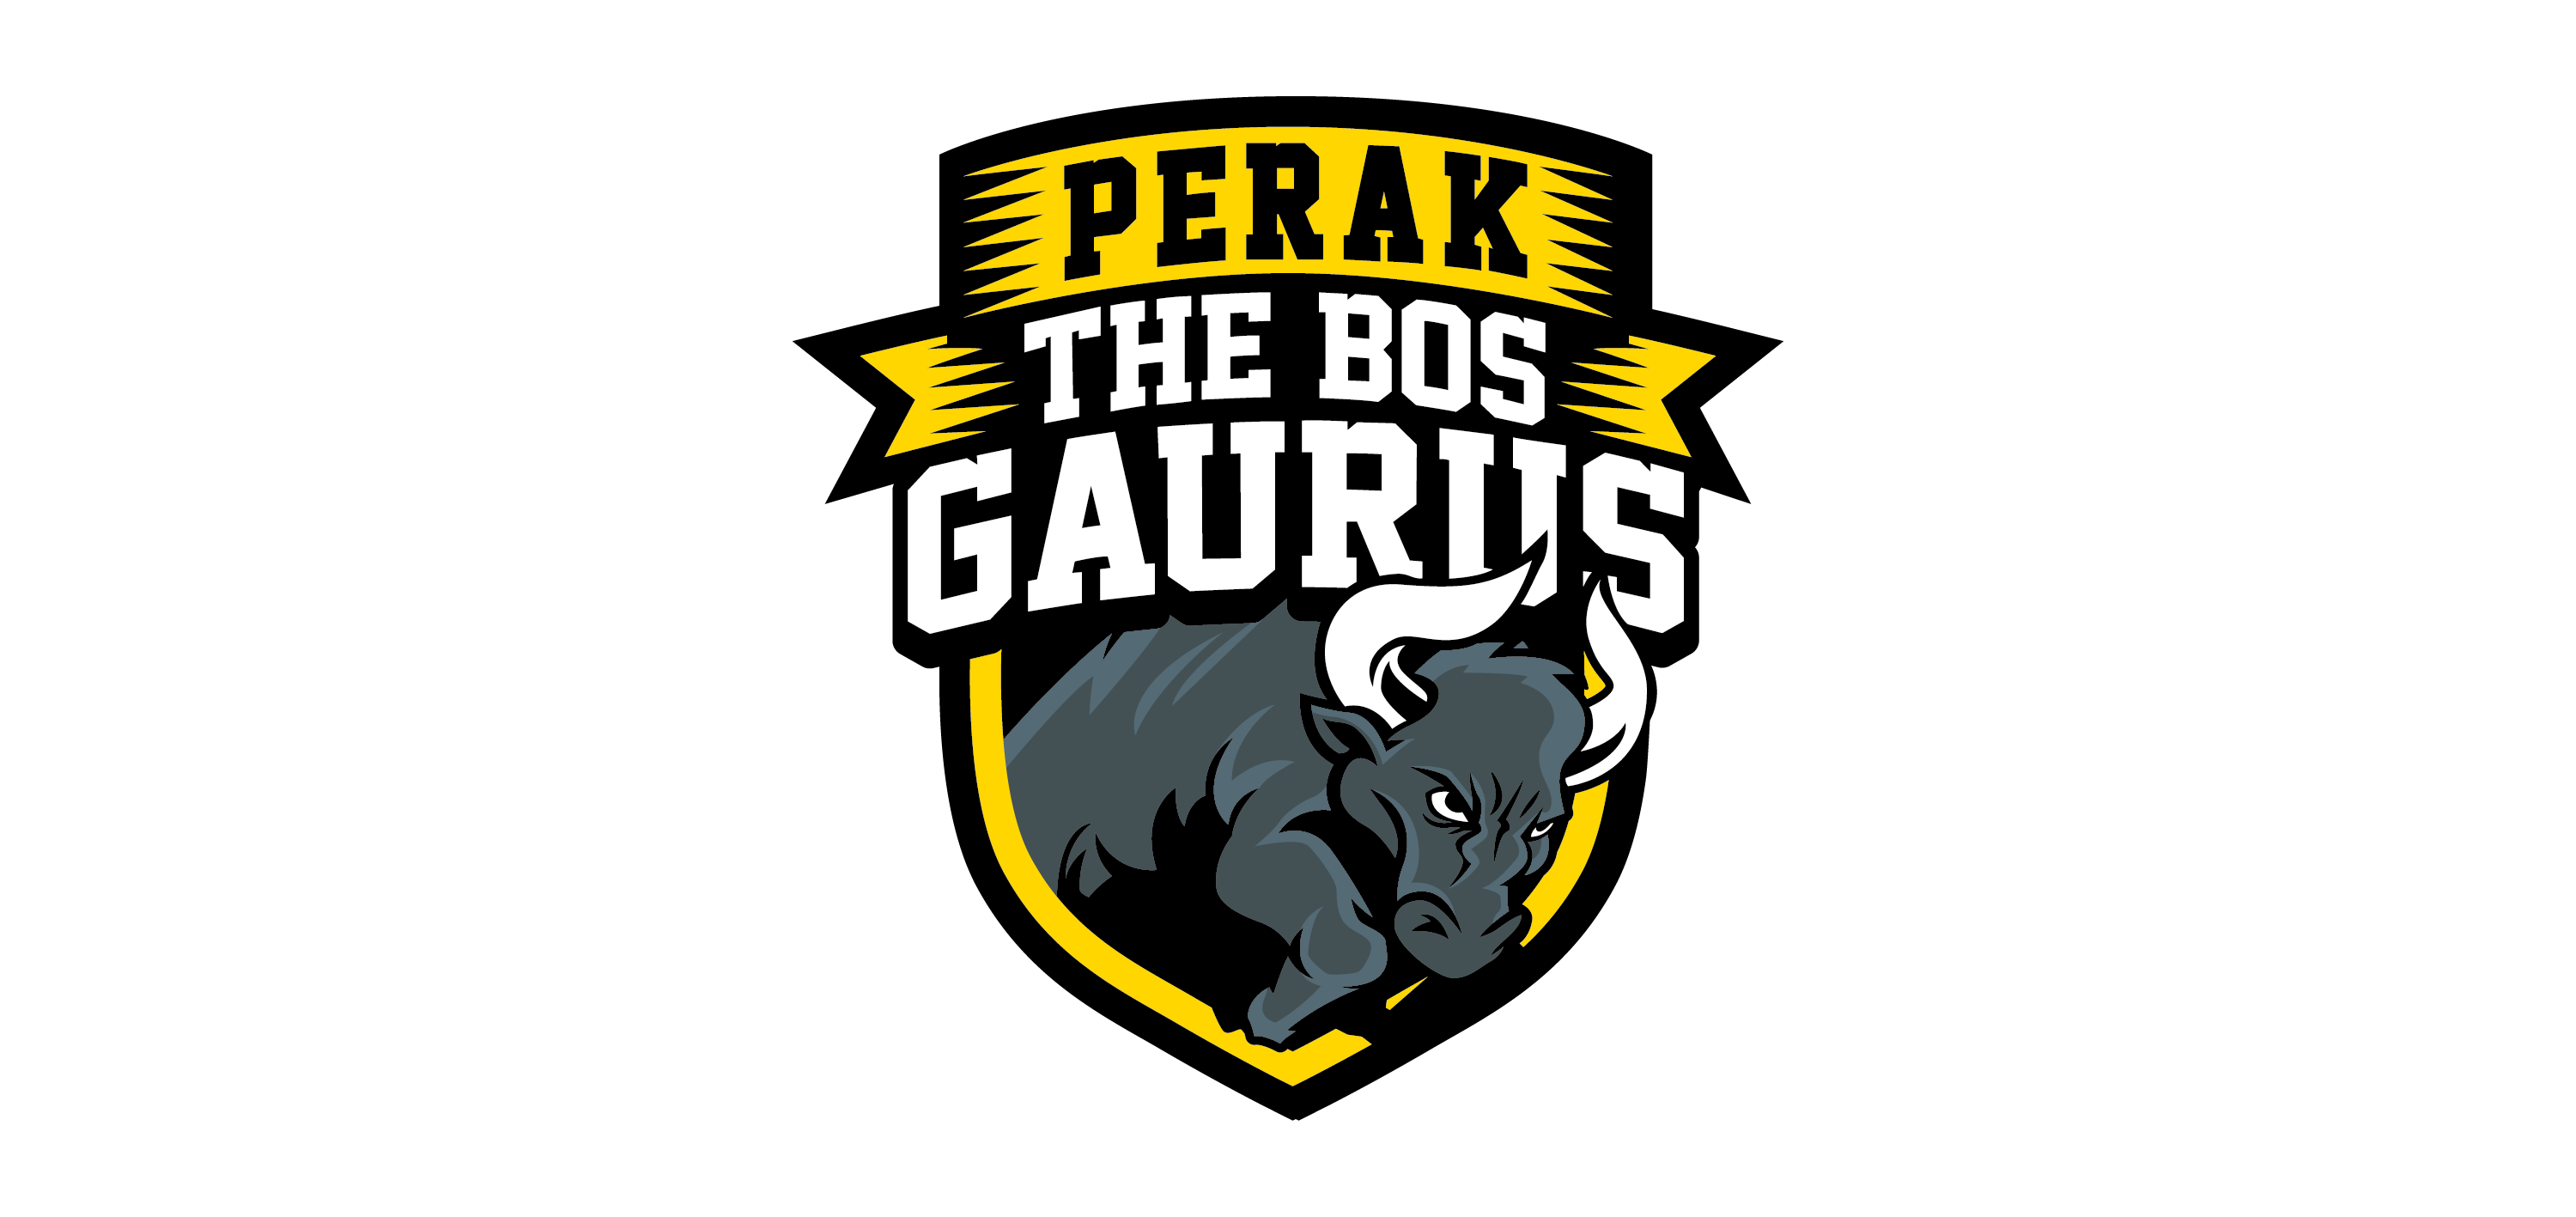 Bos Gaurus logo vector